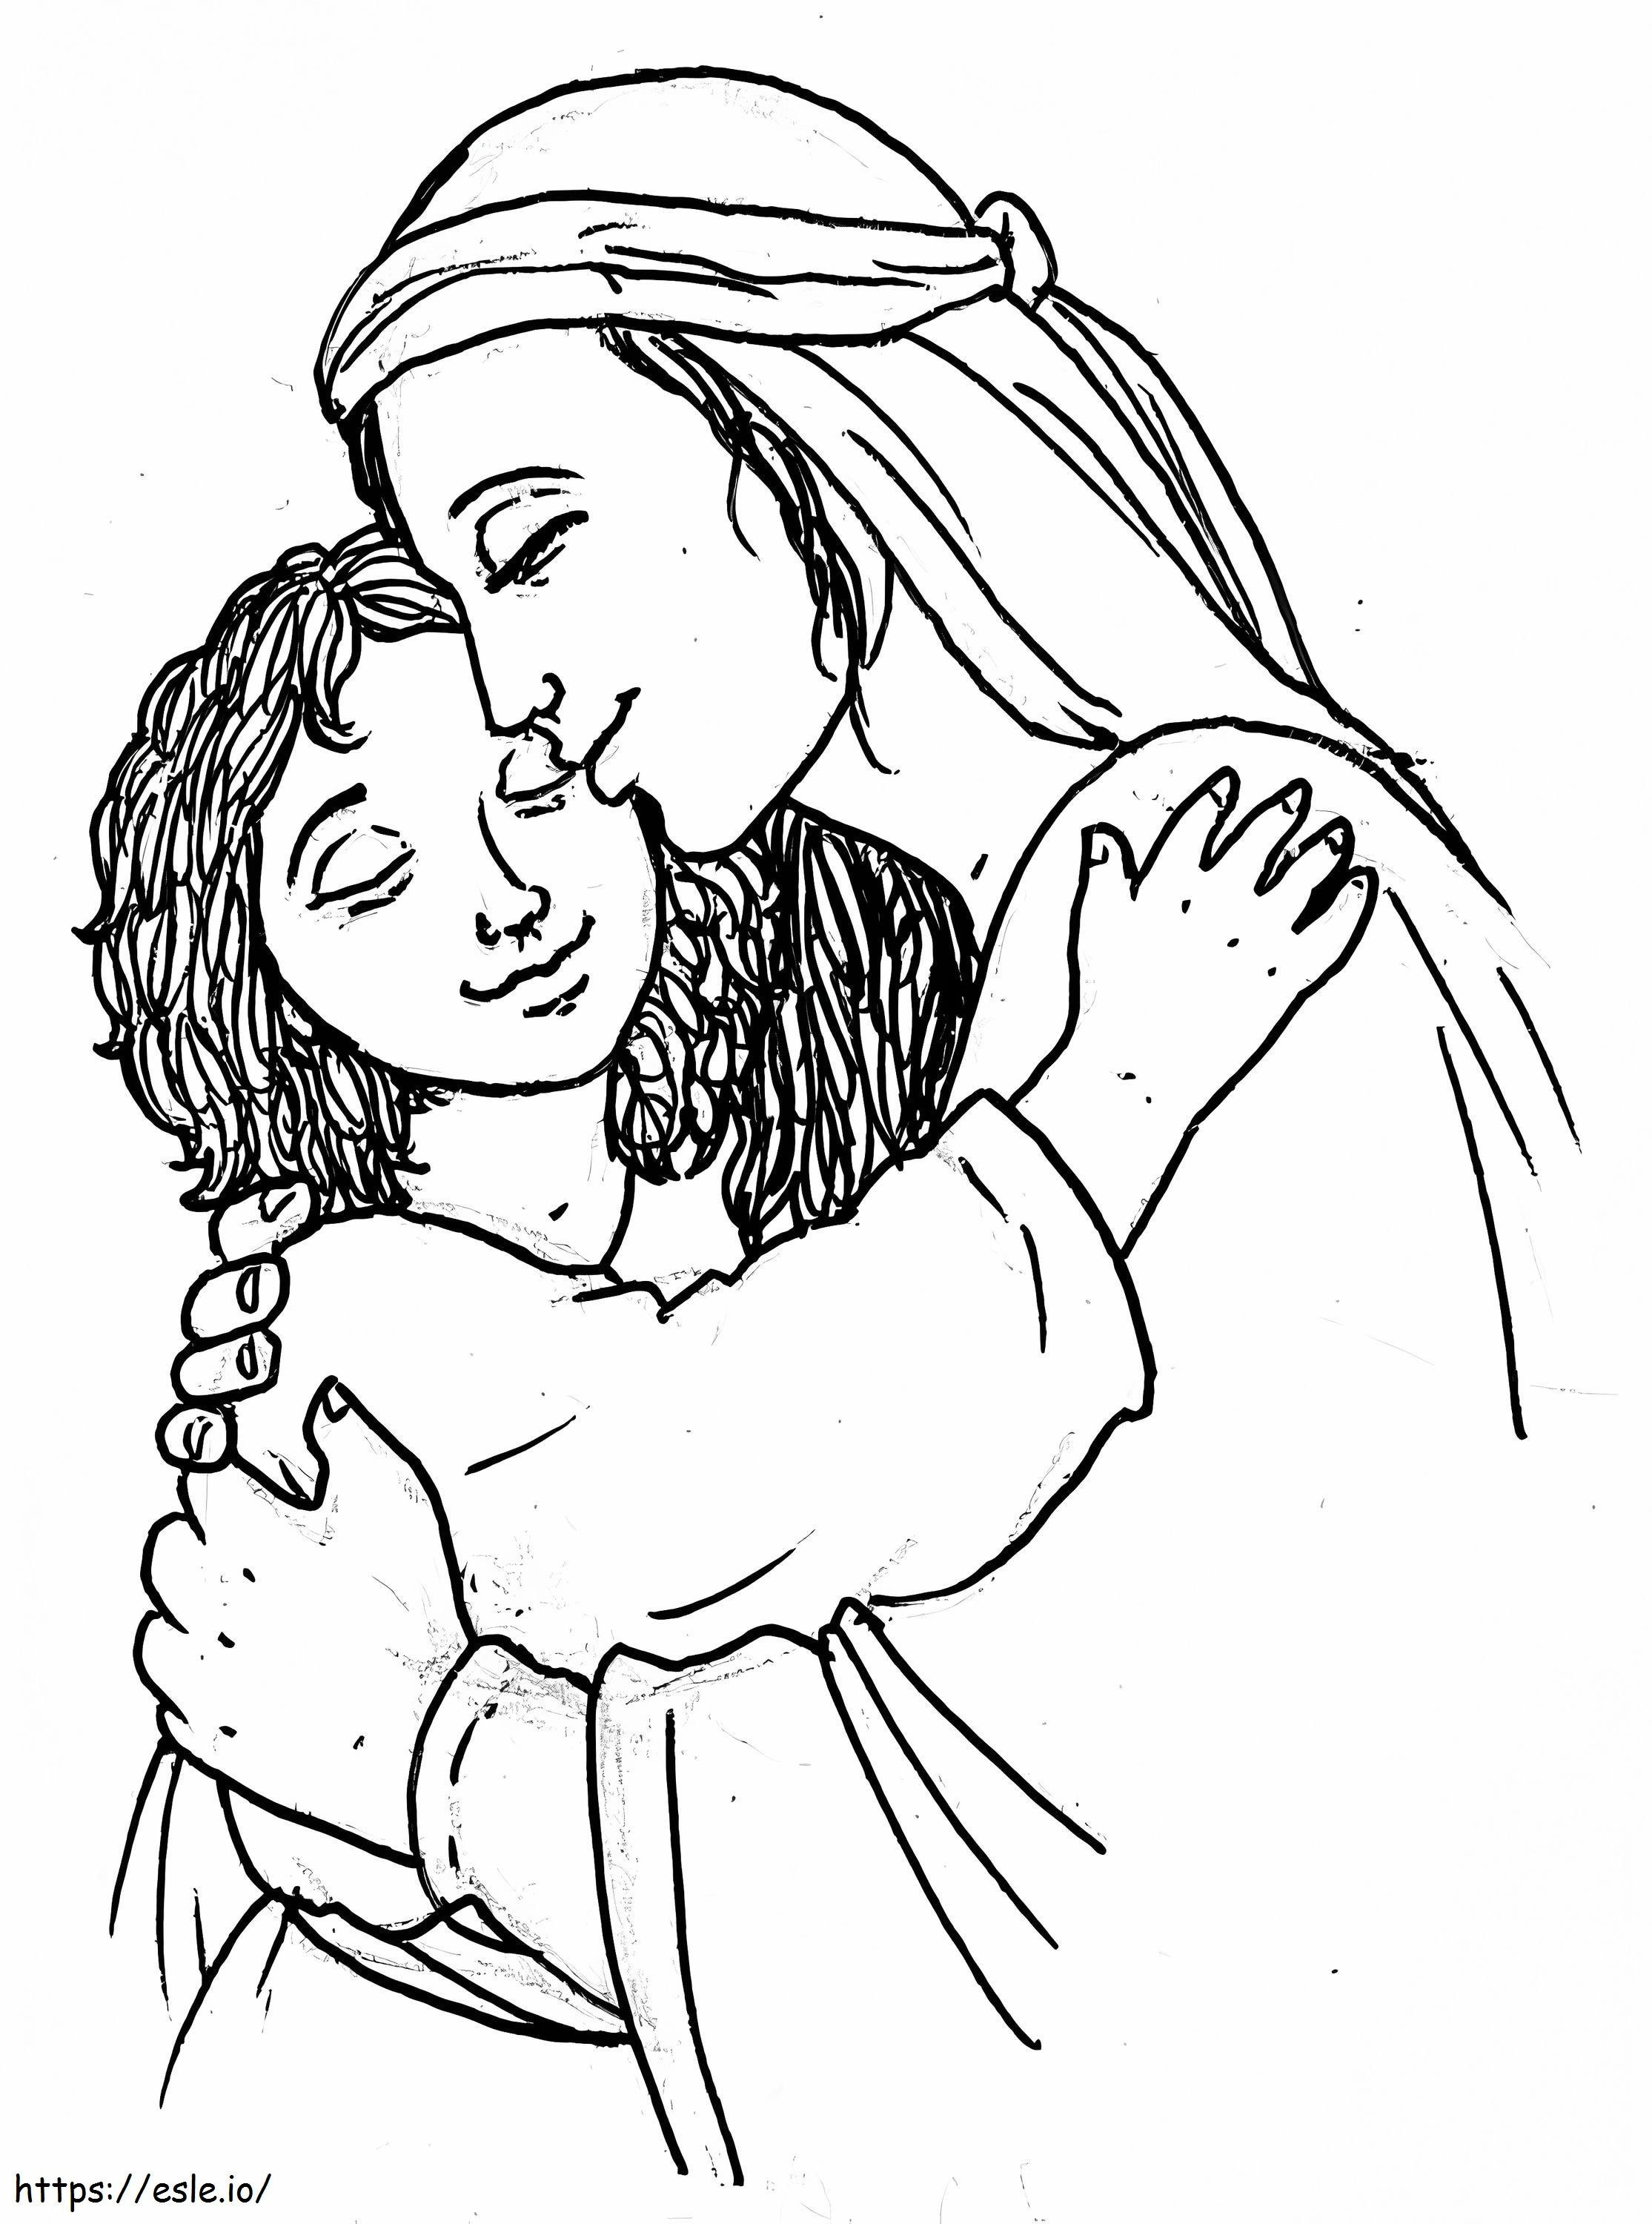 Meryem Ana ve İsa boyama